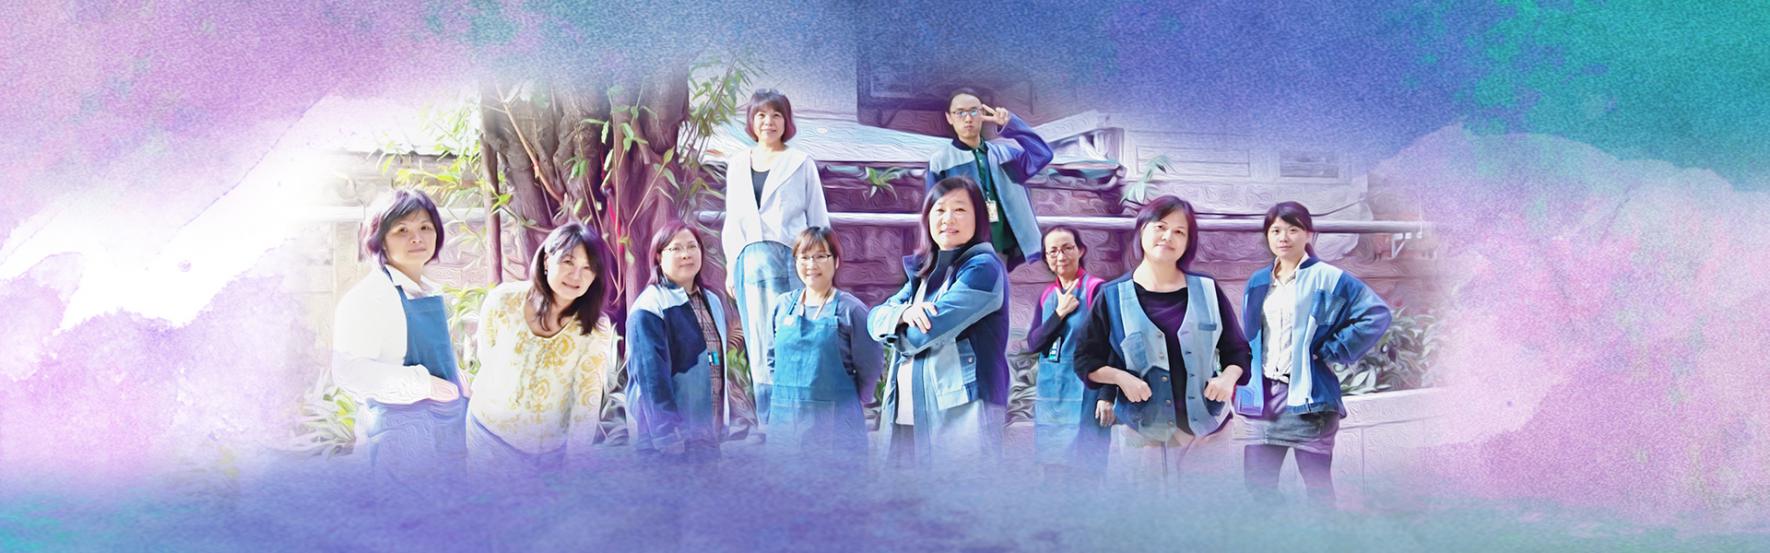 台北新知 編織女人的希望